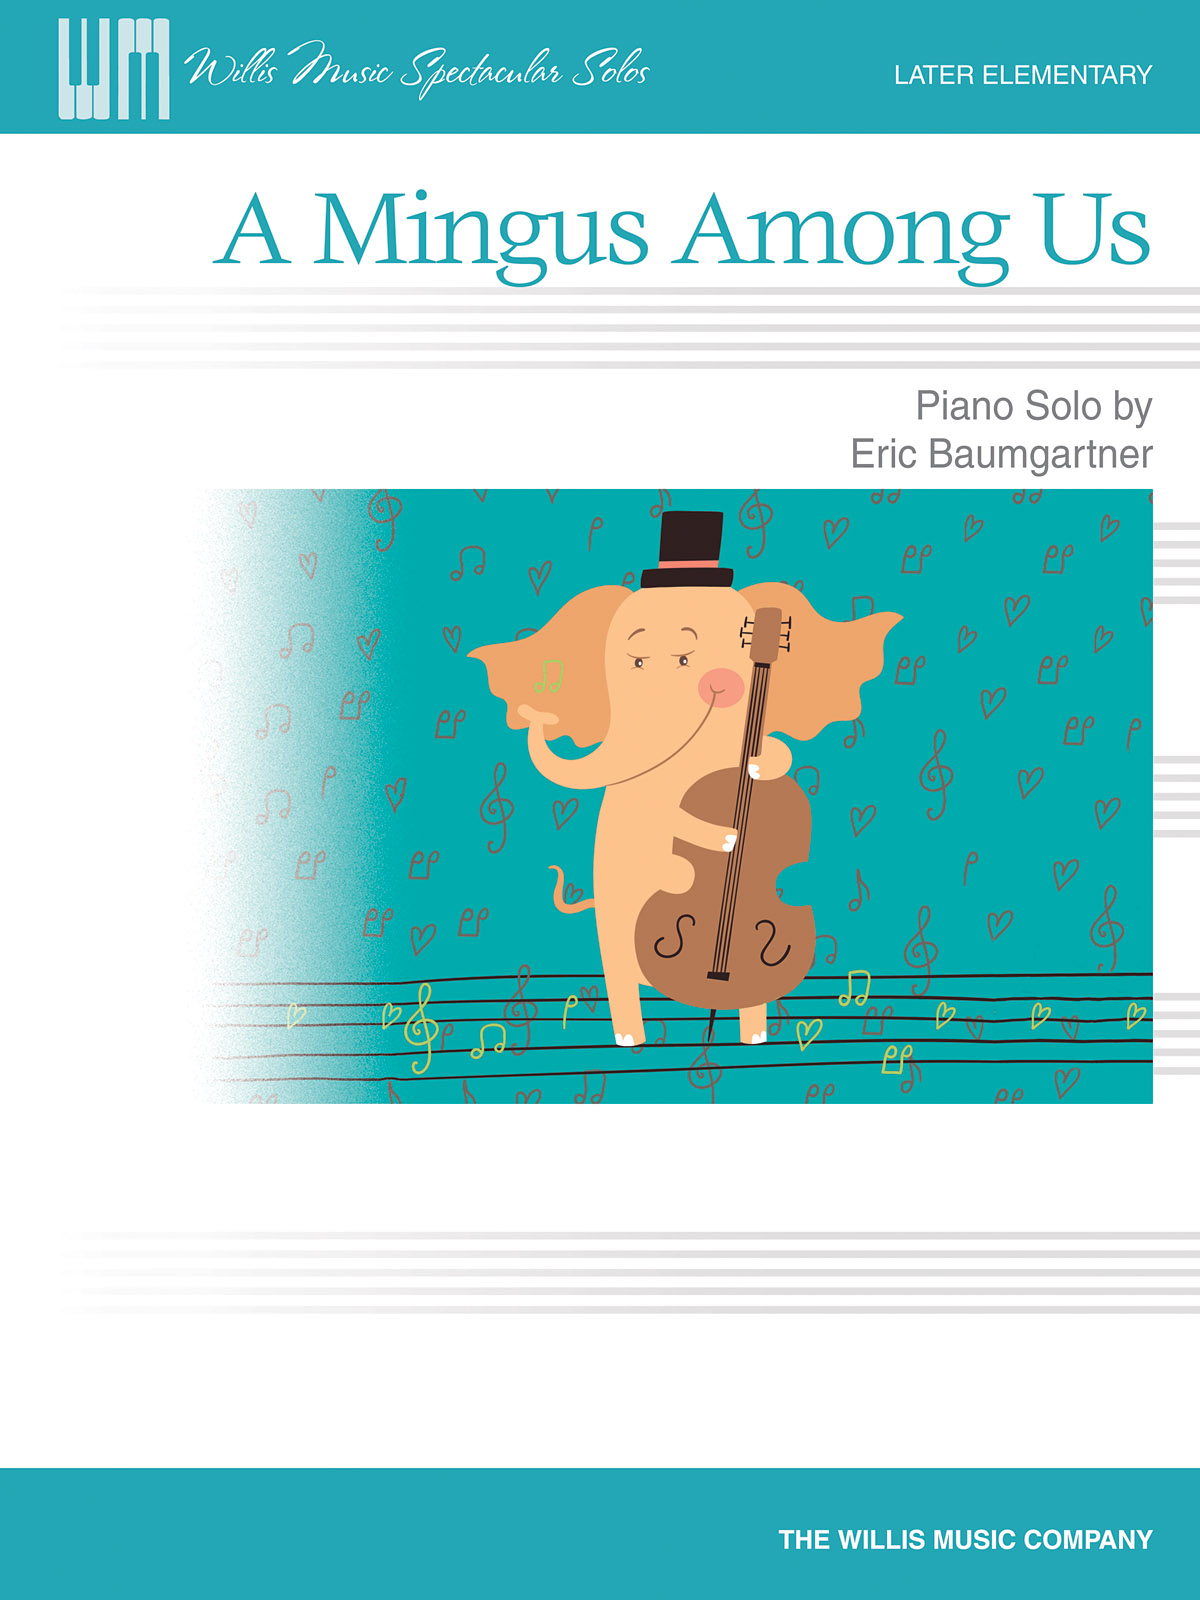 A Mingus Among Us - Later Elementary Level - noty pro zpěv, klavír s akordy pro kytaru